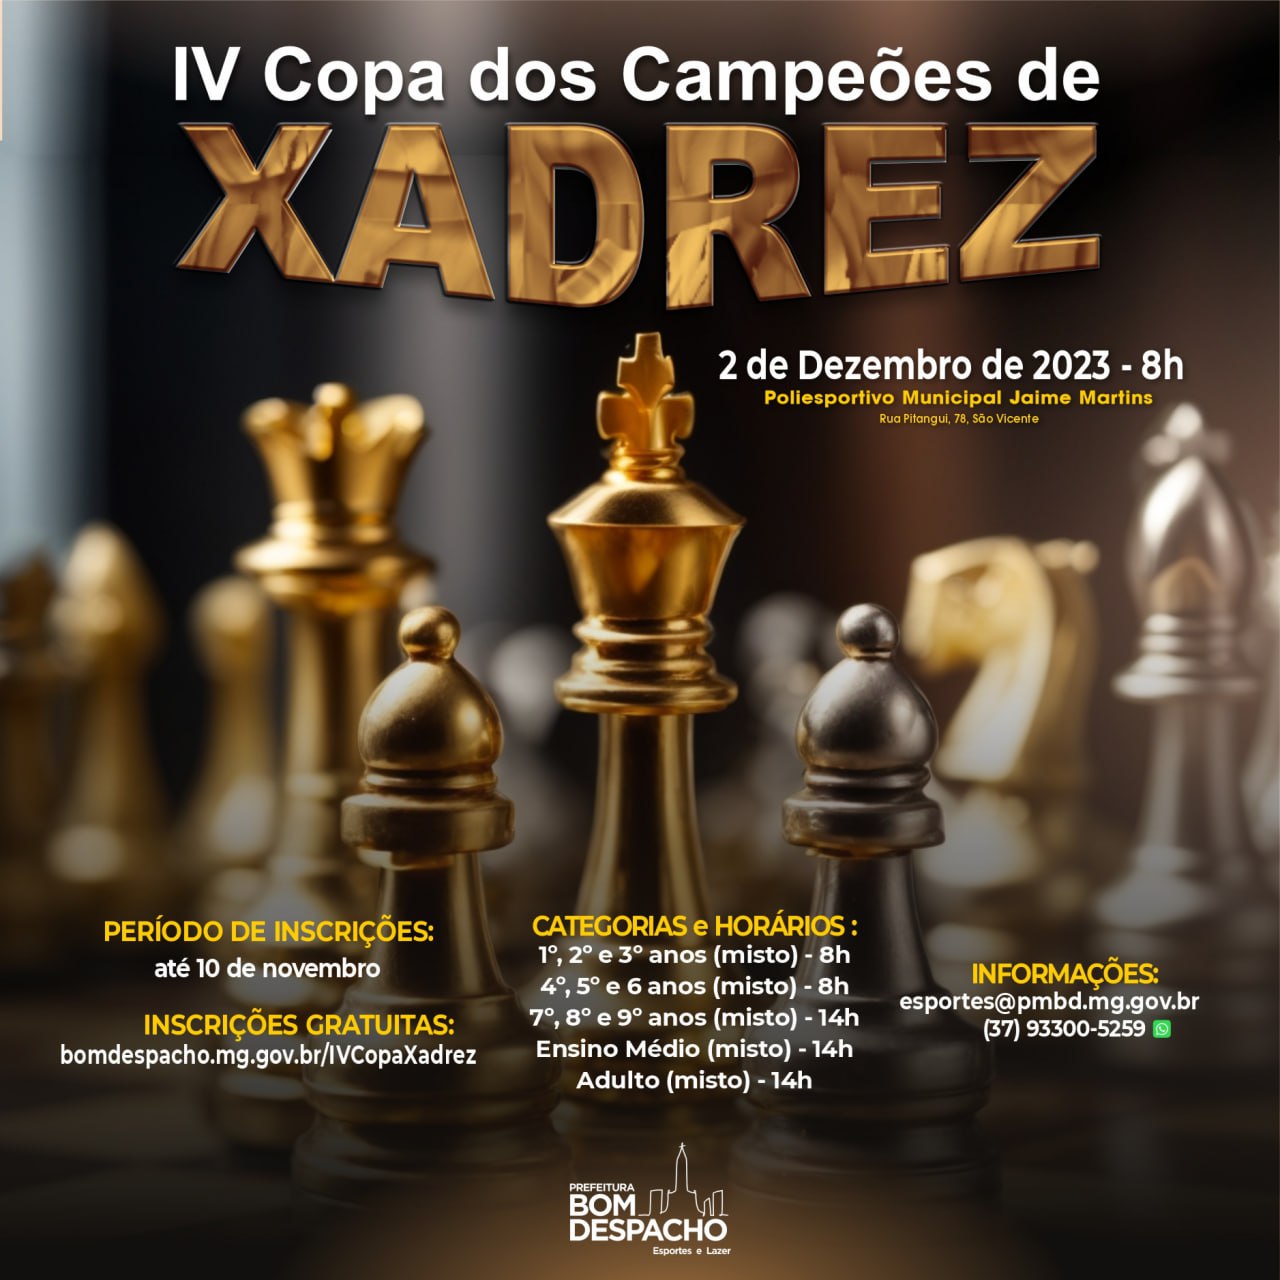 Campeonato de Xadrez on-line tem inscrições de 1º a 9 de dezembro –  Secretaria de Estado de Educação